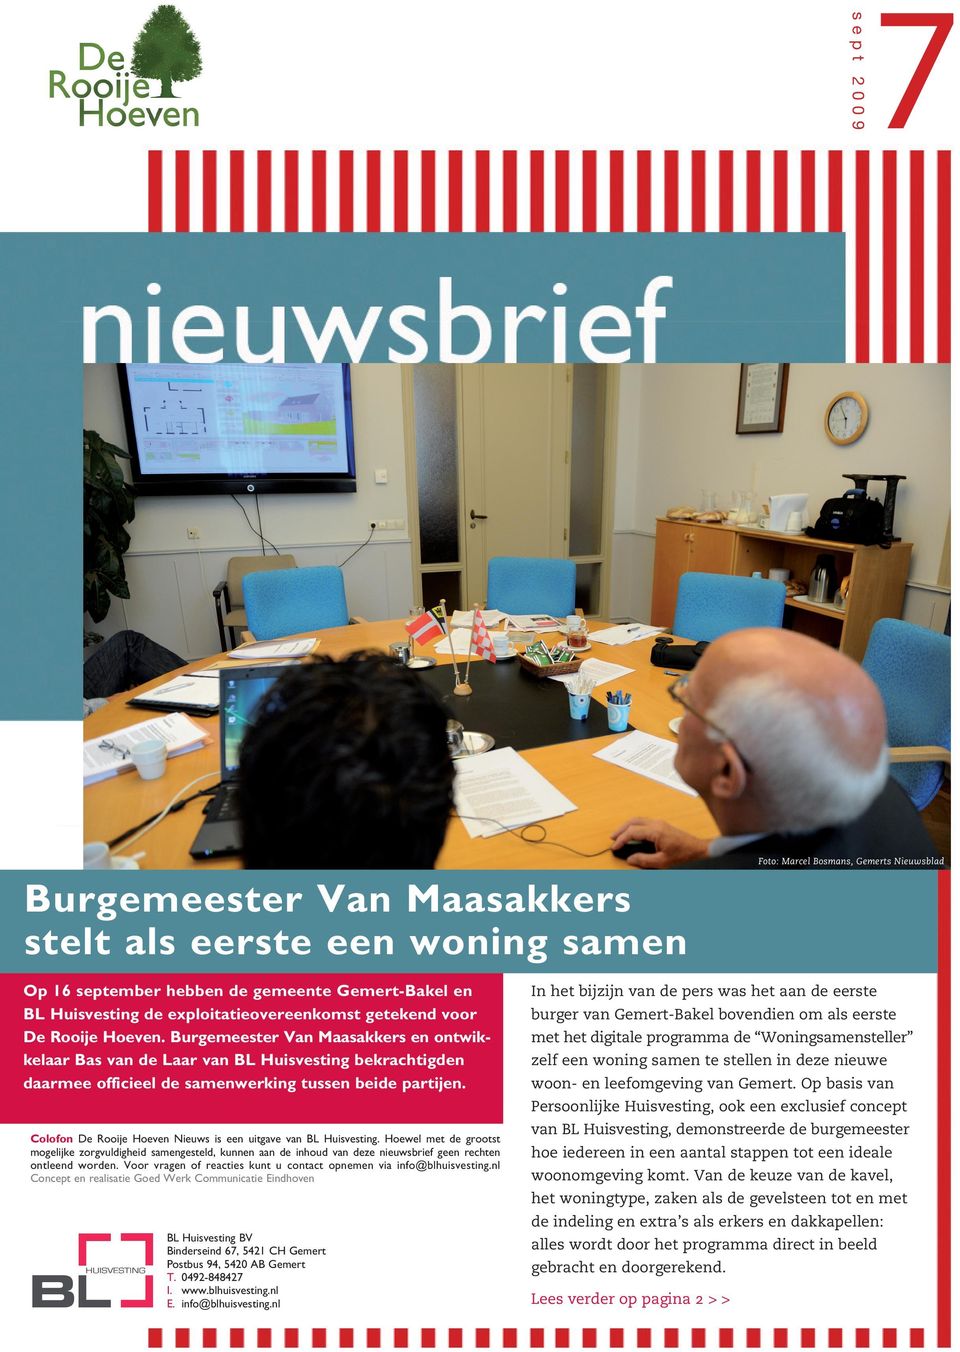 Burgemeester Van Maasakkers en ontwikkelaar Bas van de Laar van BL Huisvesting bekrachtigden daarmee officieel de samenwerking tussen beide partijen.